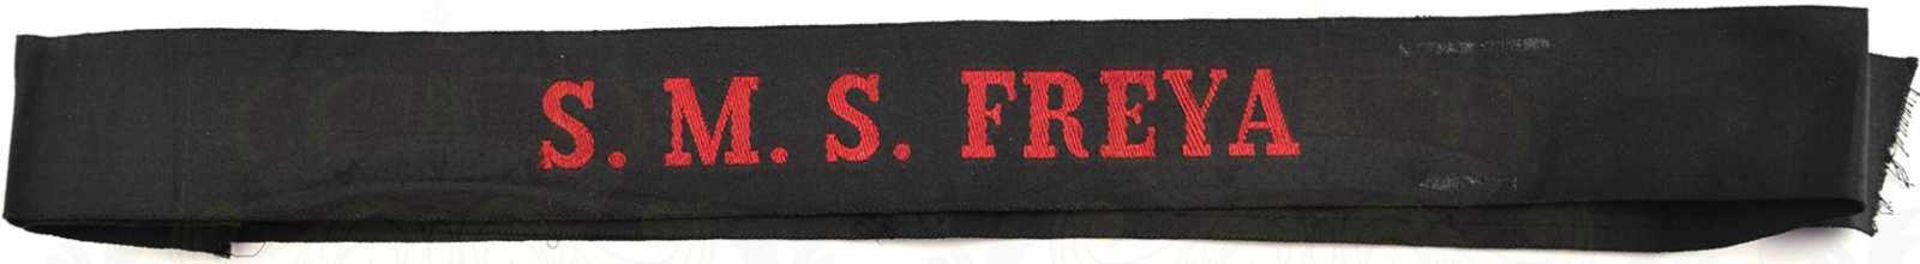 MÜTZENBAND S.M.S. FREYA, für Schiffsjungen, schwarzes Ripsband mit roter Stickerei, L. 98cm, sehr